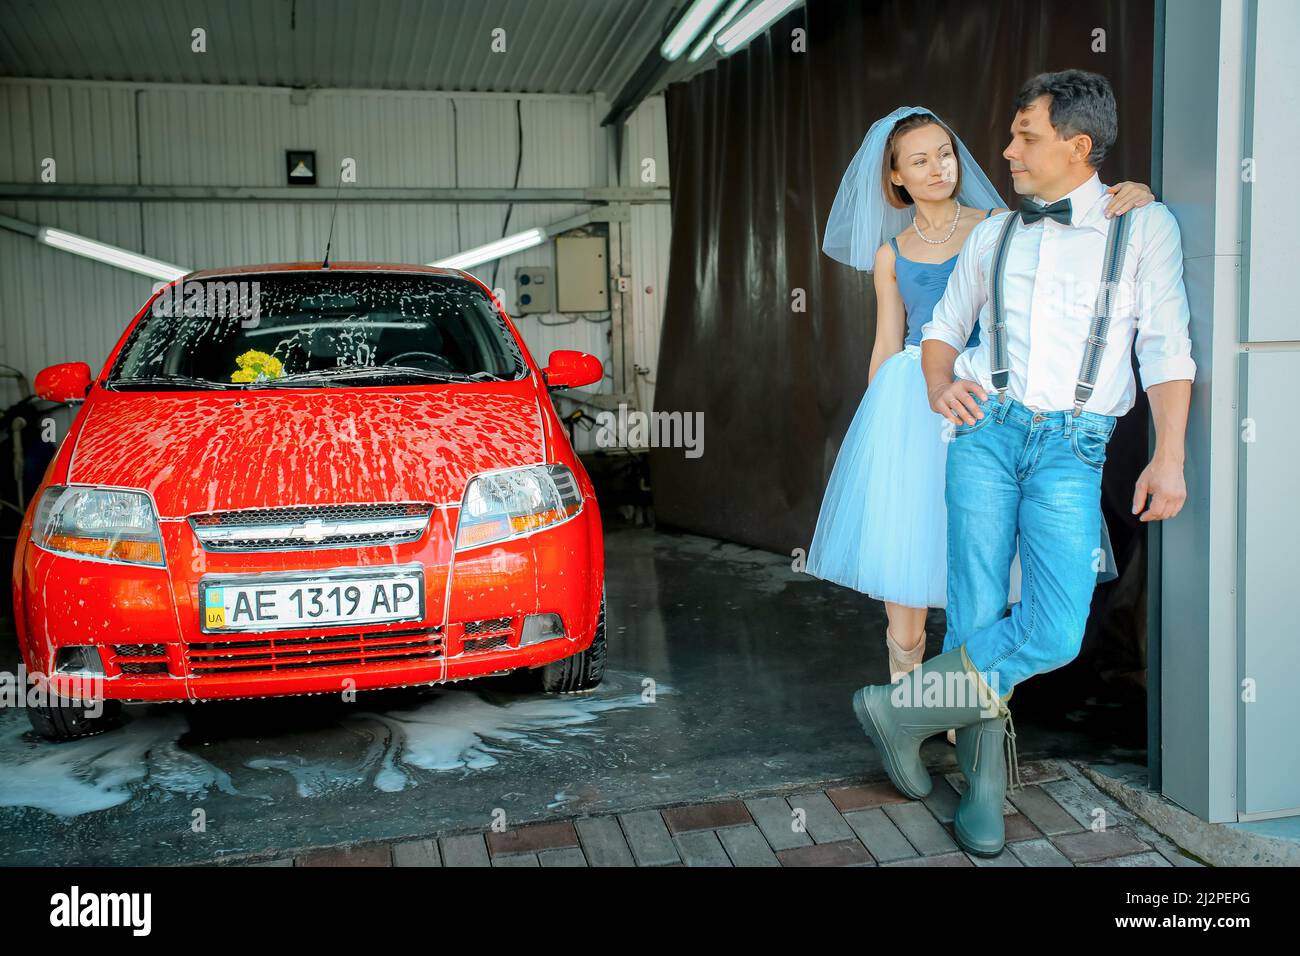 Dnepropetrovsk, Ucraina - 09.11.2016: Ritratto di una giovane coppia in abito da sposa che celebra il loro anniversario di matrimonio. La coppia sta lavando il ca Foto Stock